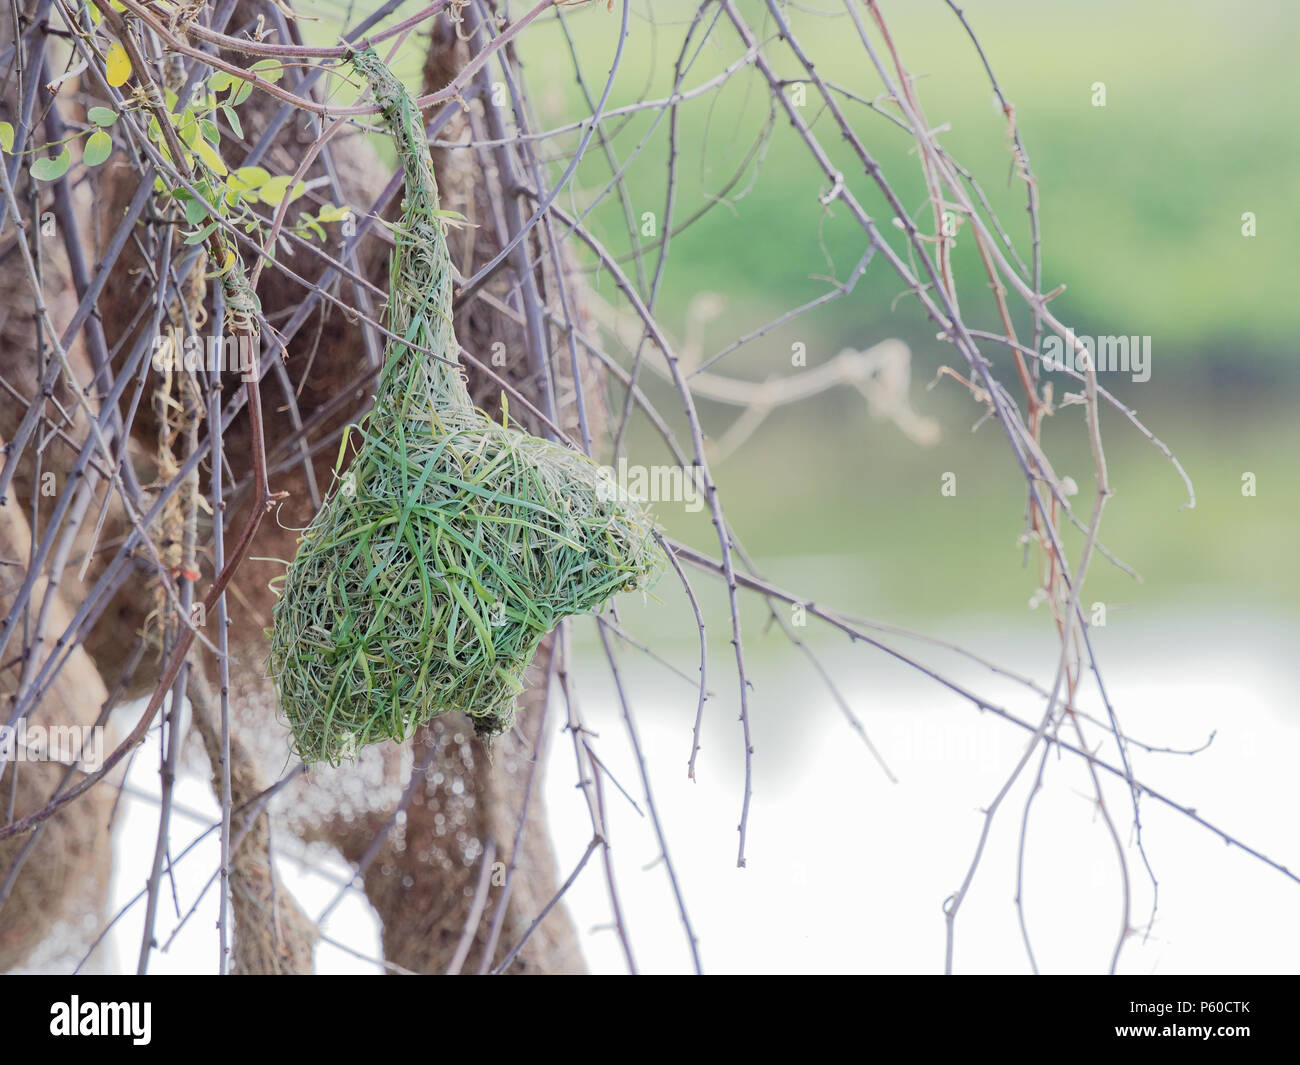 Tejedor vacío nido de pájaro hechas por hierba seca o paja en árbol en Granja al aire libre con fondo desenfocado Foto de stock